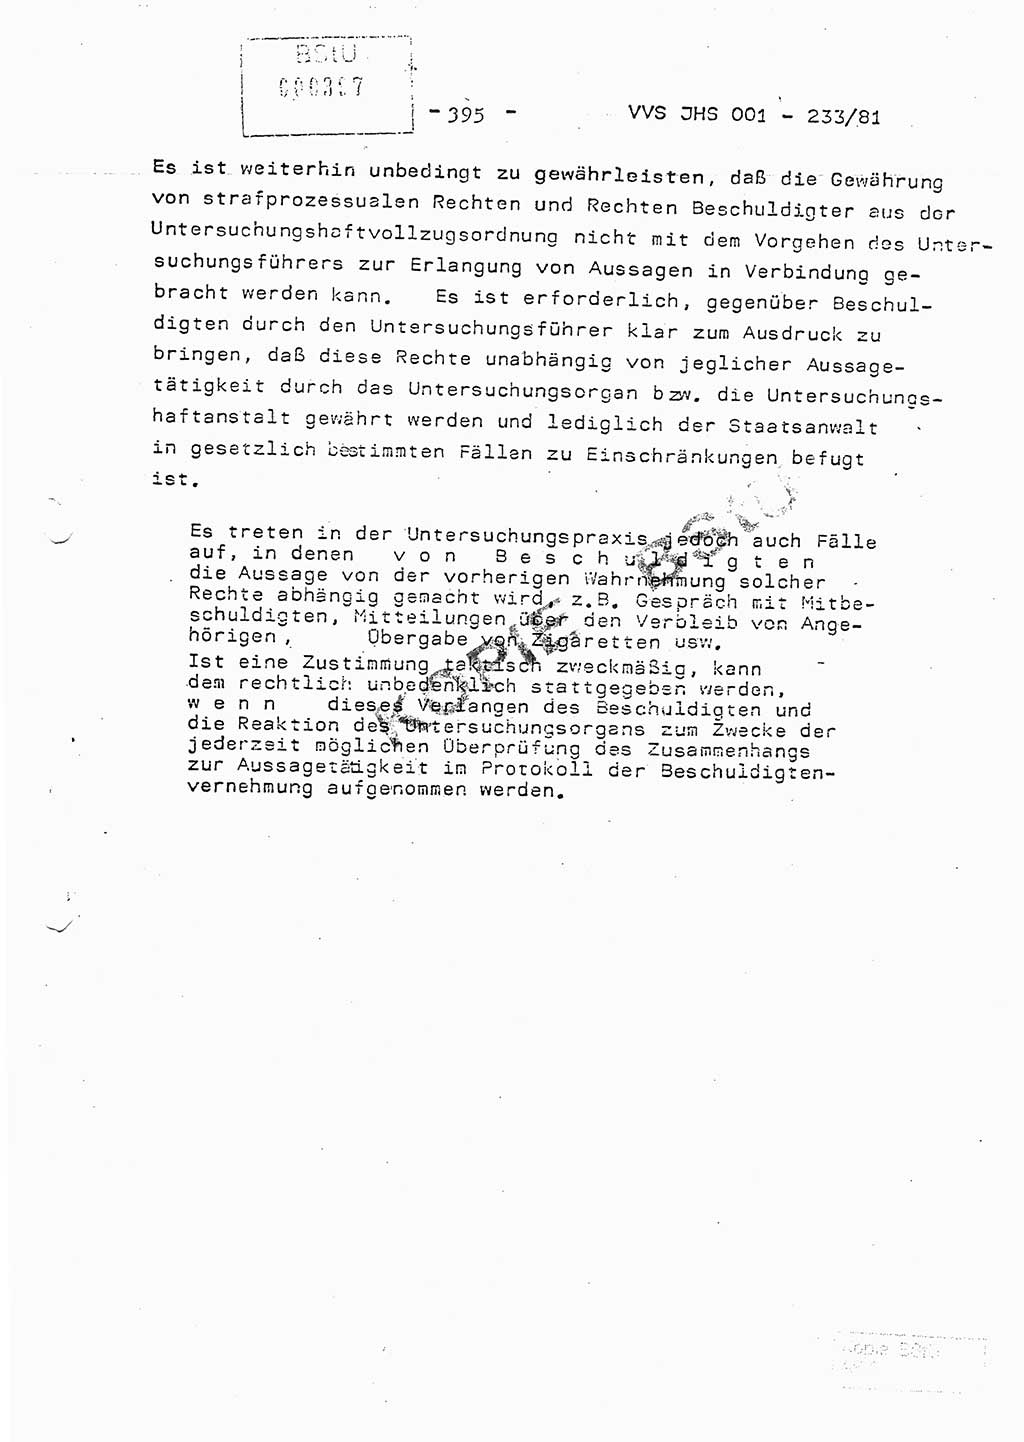 Dissertation Oberstleutnant Horst Zank (JHS), Oberstleutnant Dr. Karl-Heinz Knoblauch (JHS), Oberstleutnant Gustav-Adolf Kowalewski (HA Ⅸ), Oberstleutnant Wolfgang Plötner (HA Ⅸ), Ministerium für Staatssicherheit (MfS) [Deutsche Demokratische Republik (DDR)], Juristische Hochschule (JHS), Vertrauliche Verschlußsache (VVS) o001-233/81, Potsdam 1981, Blatt 395 (Diss. MfS DDR JHS VVS o001-233/81 1981, Bl. 395)